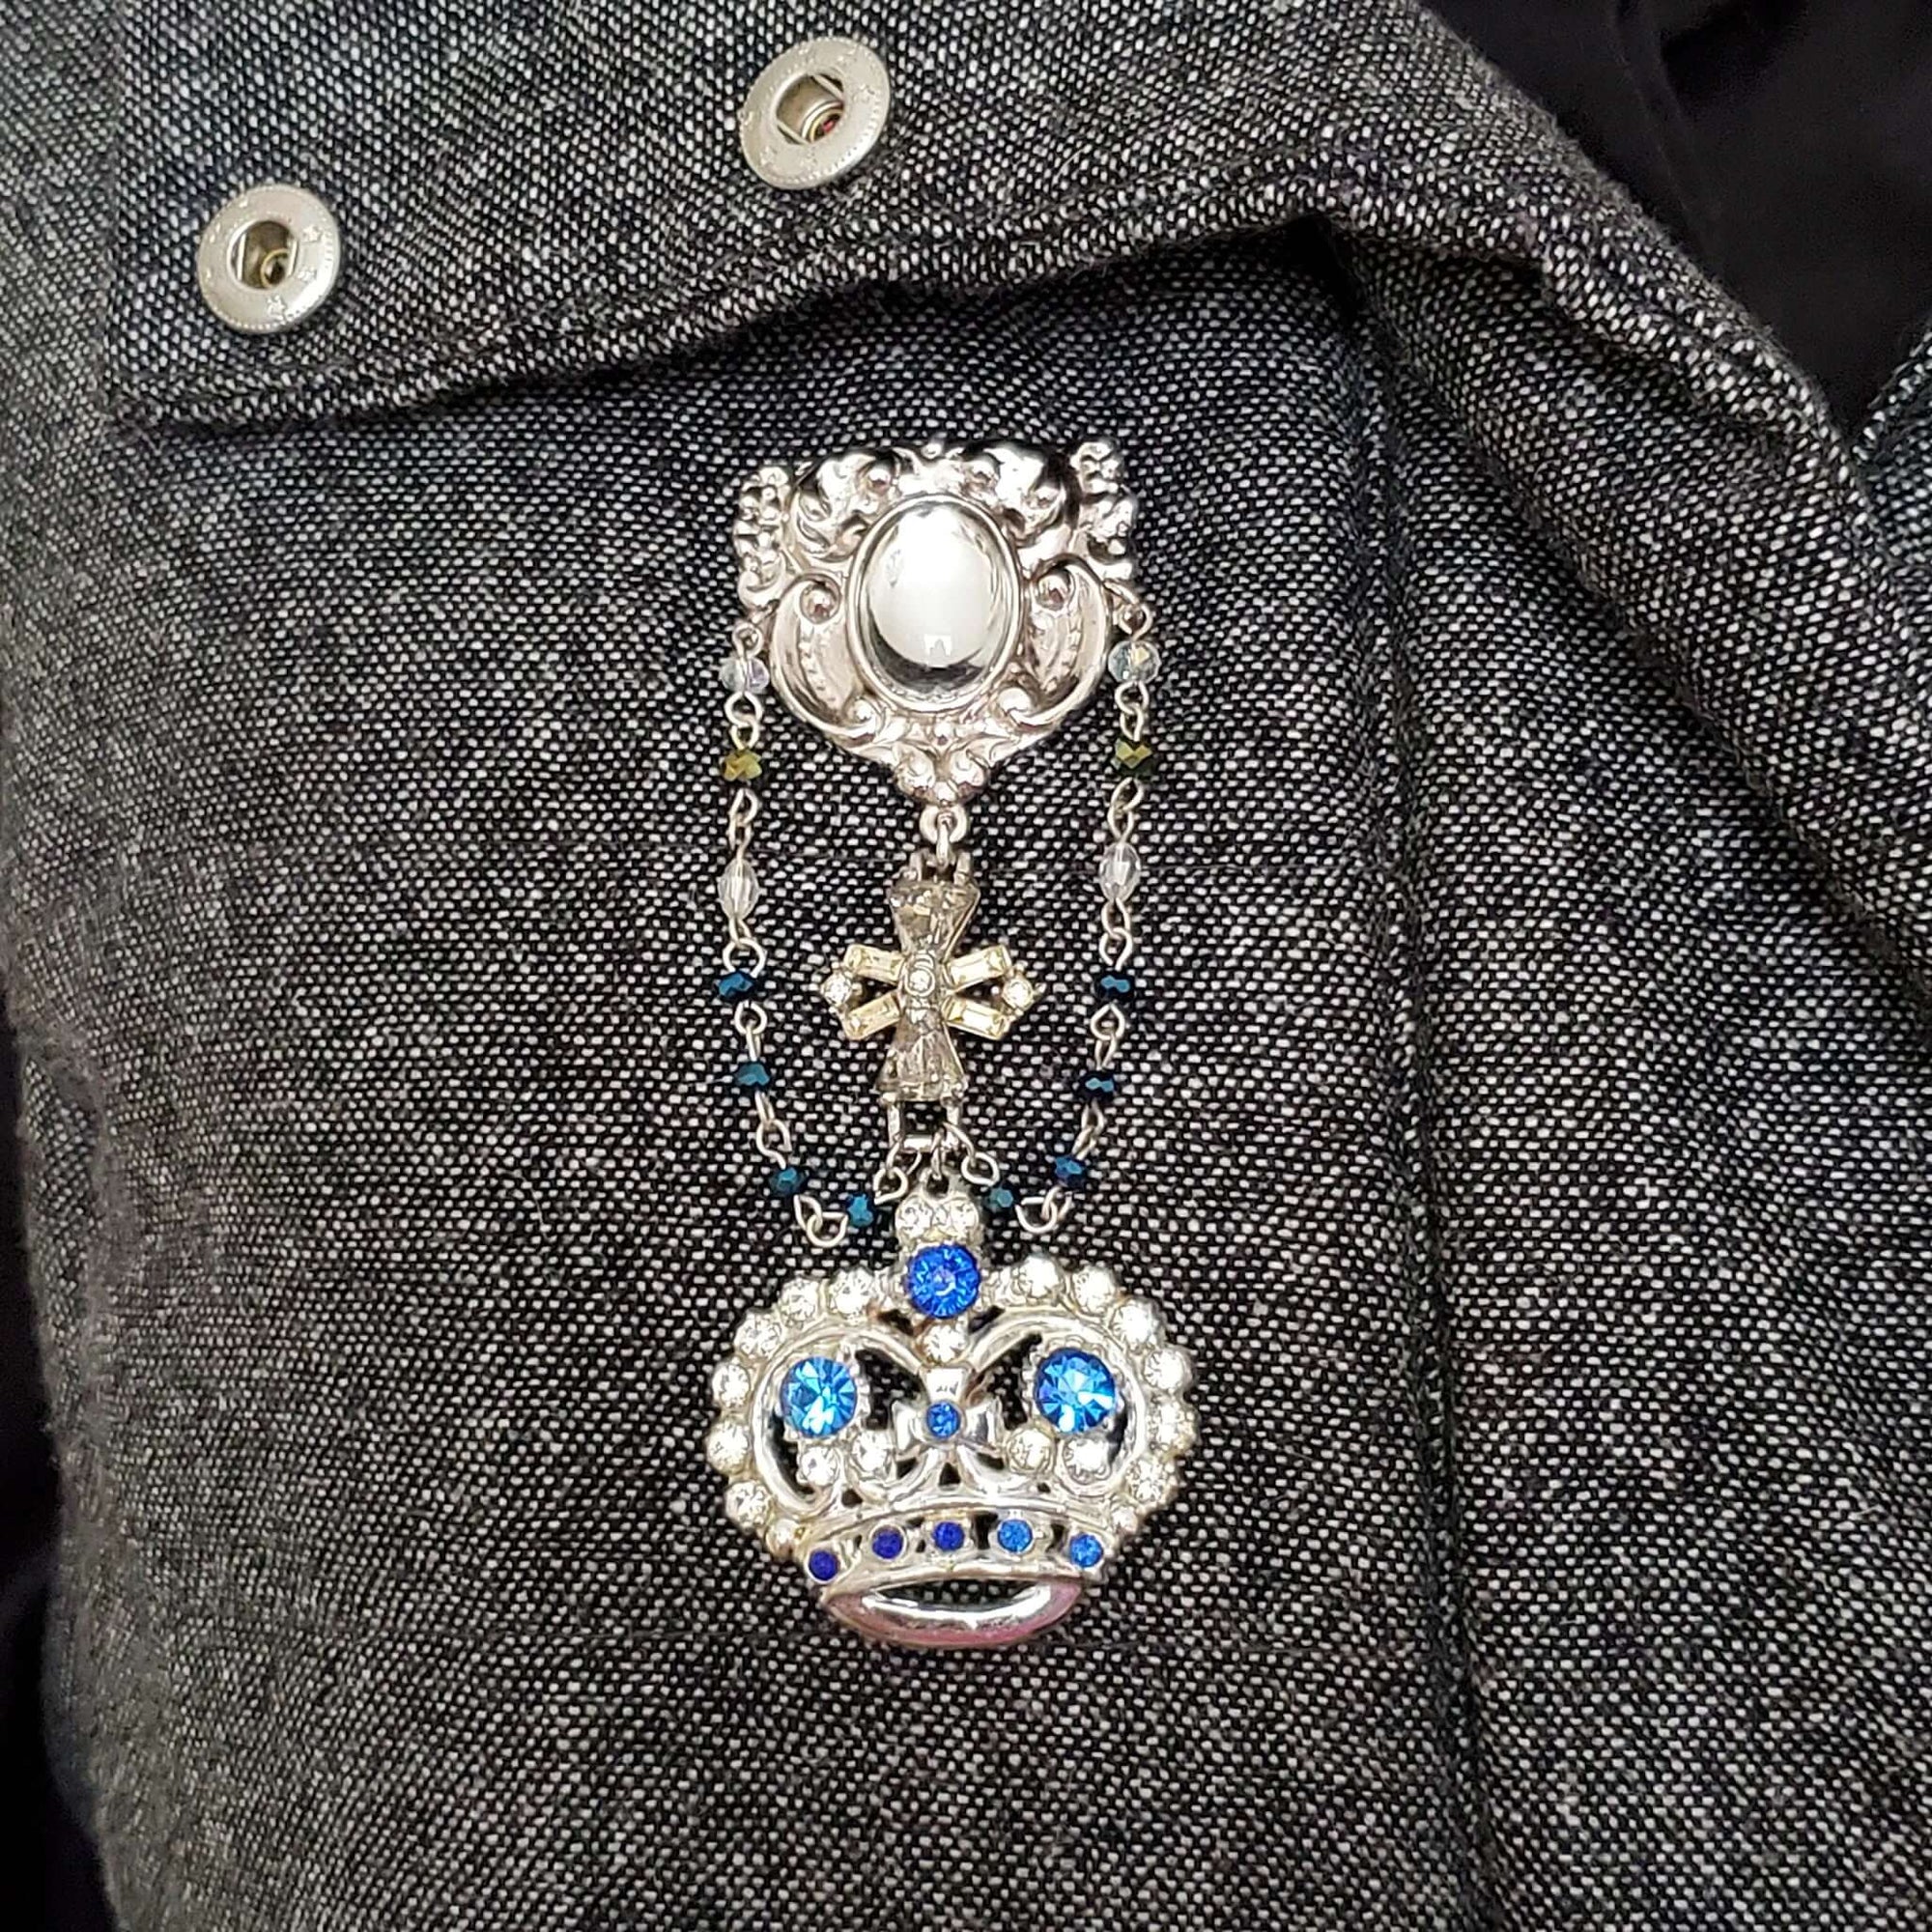 Vintage rhinestone crown brooch pin 